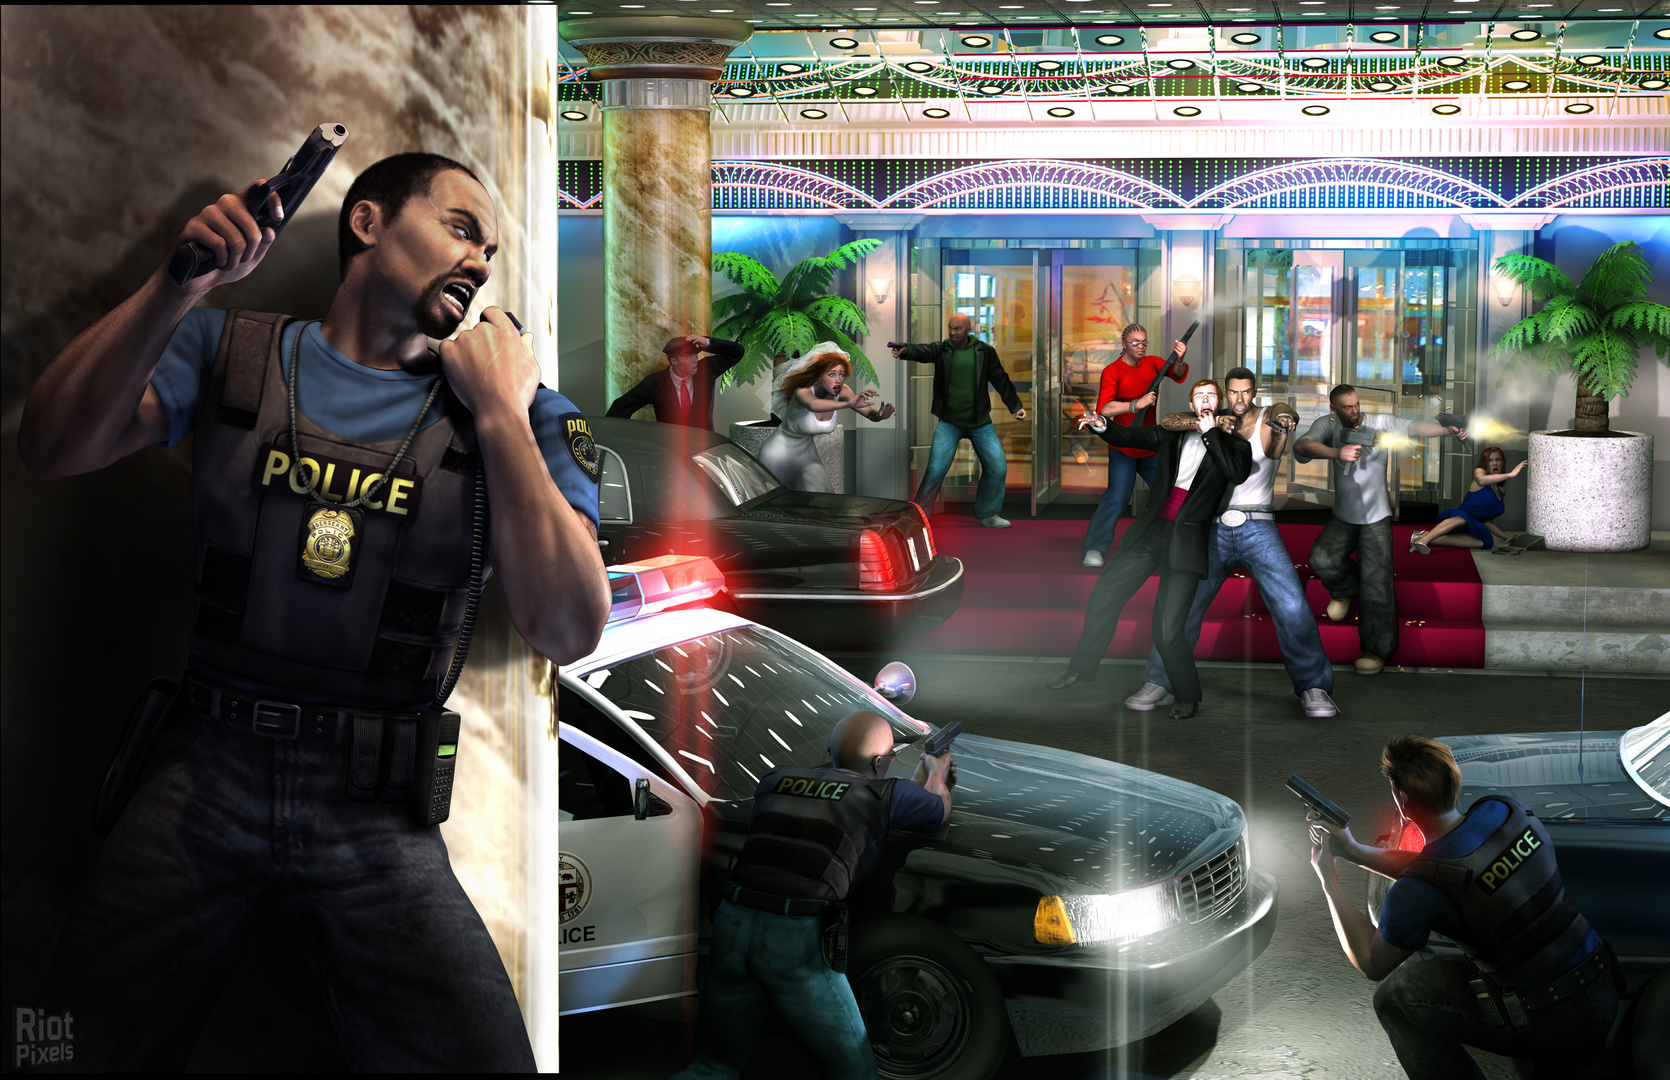 World End Syndrome - game artworks at Riot Pixels